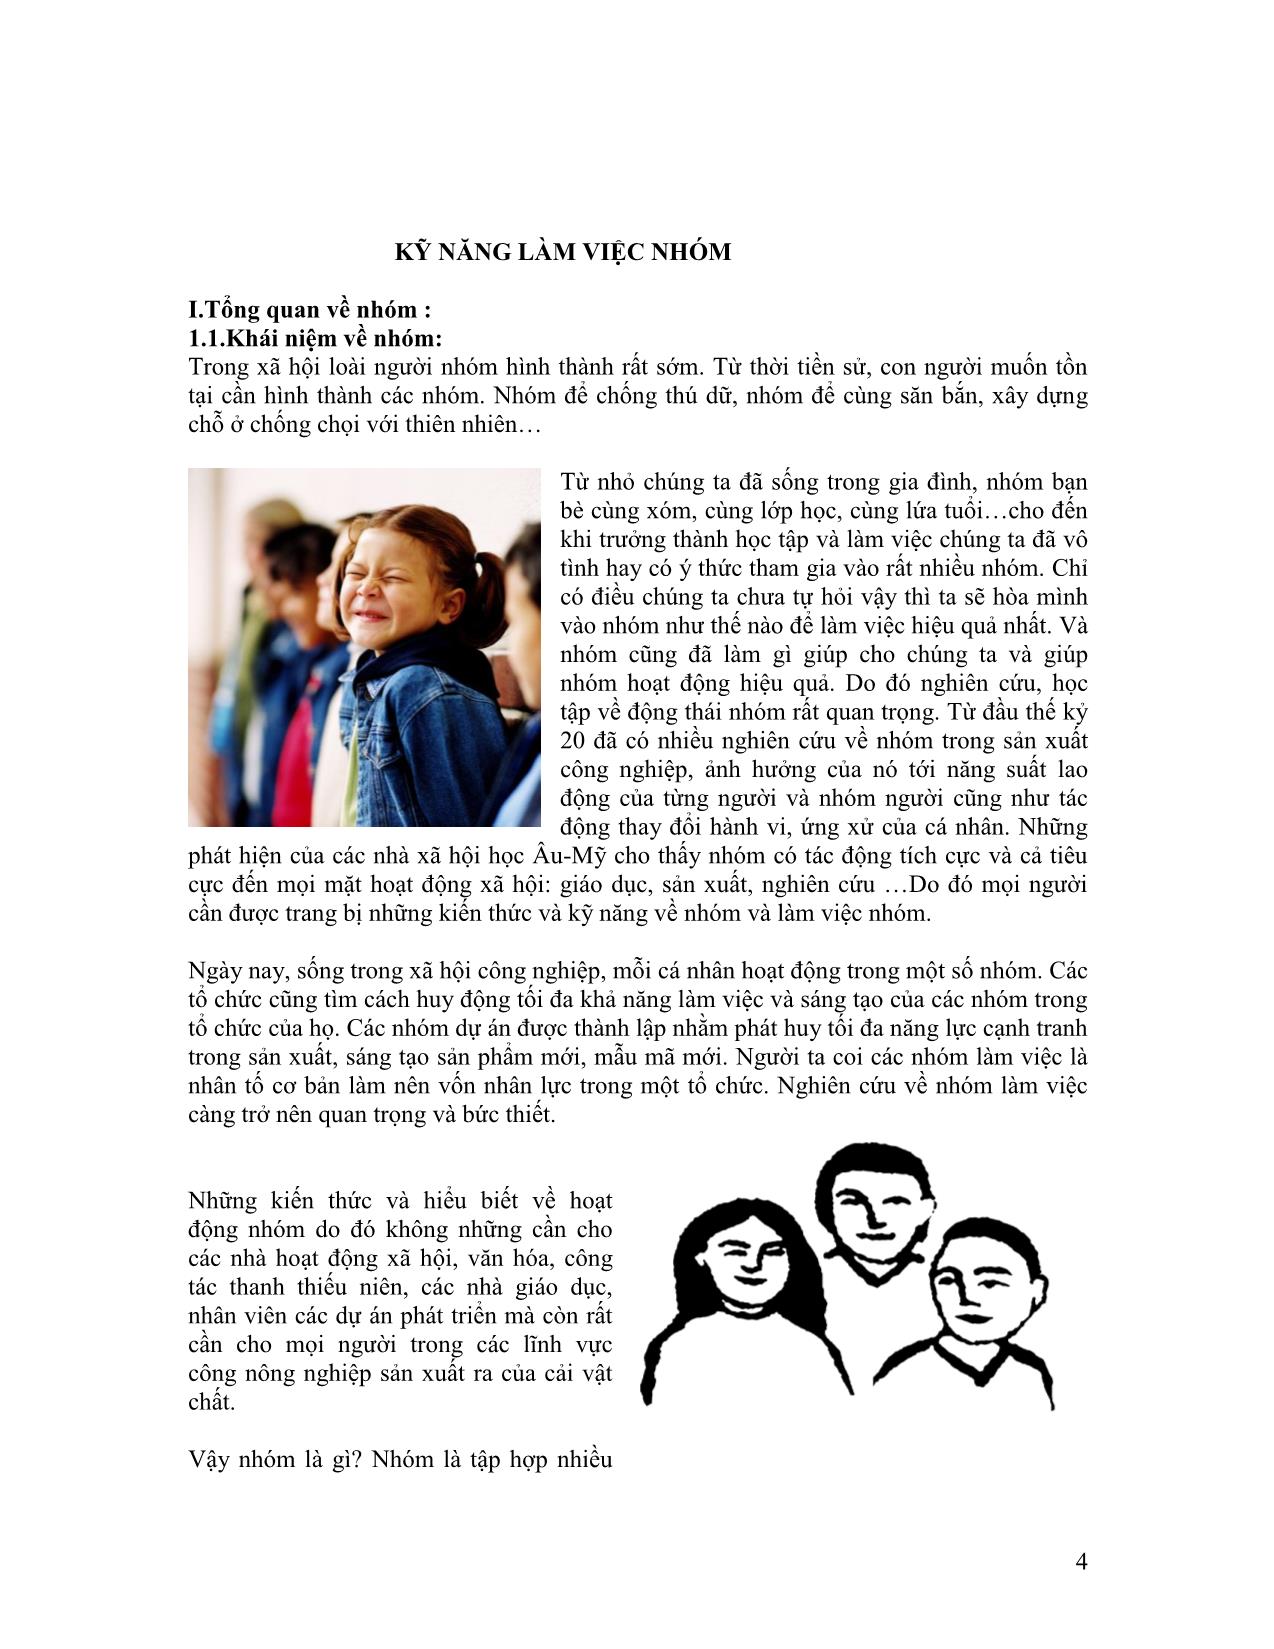 Giáo trình Kỹ năng làm việc nhóm (Phần 1) trang 4